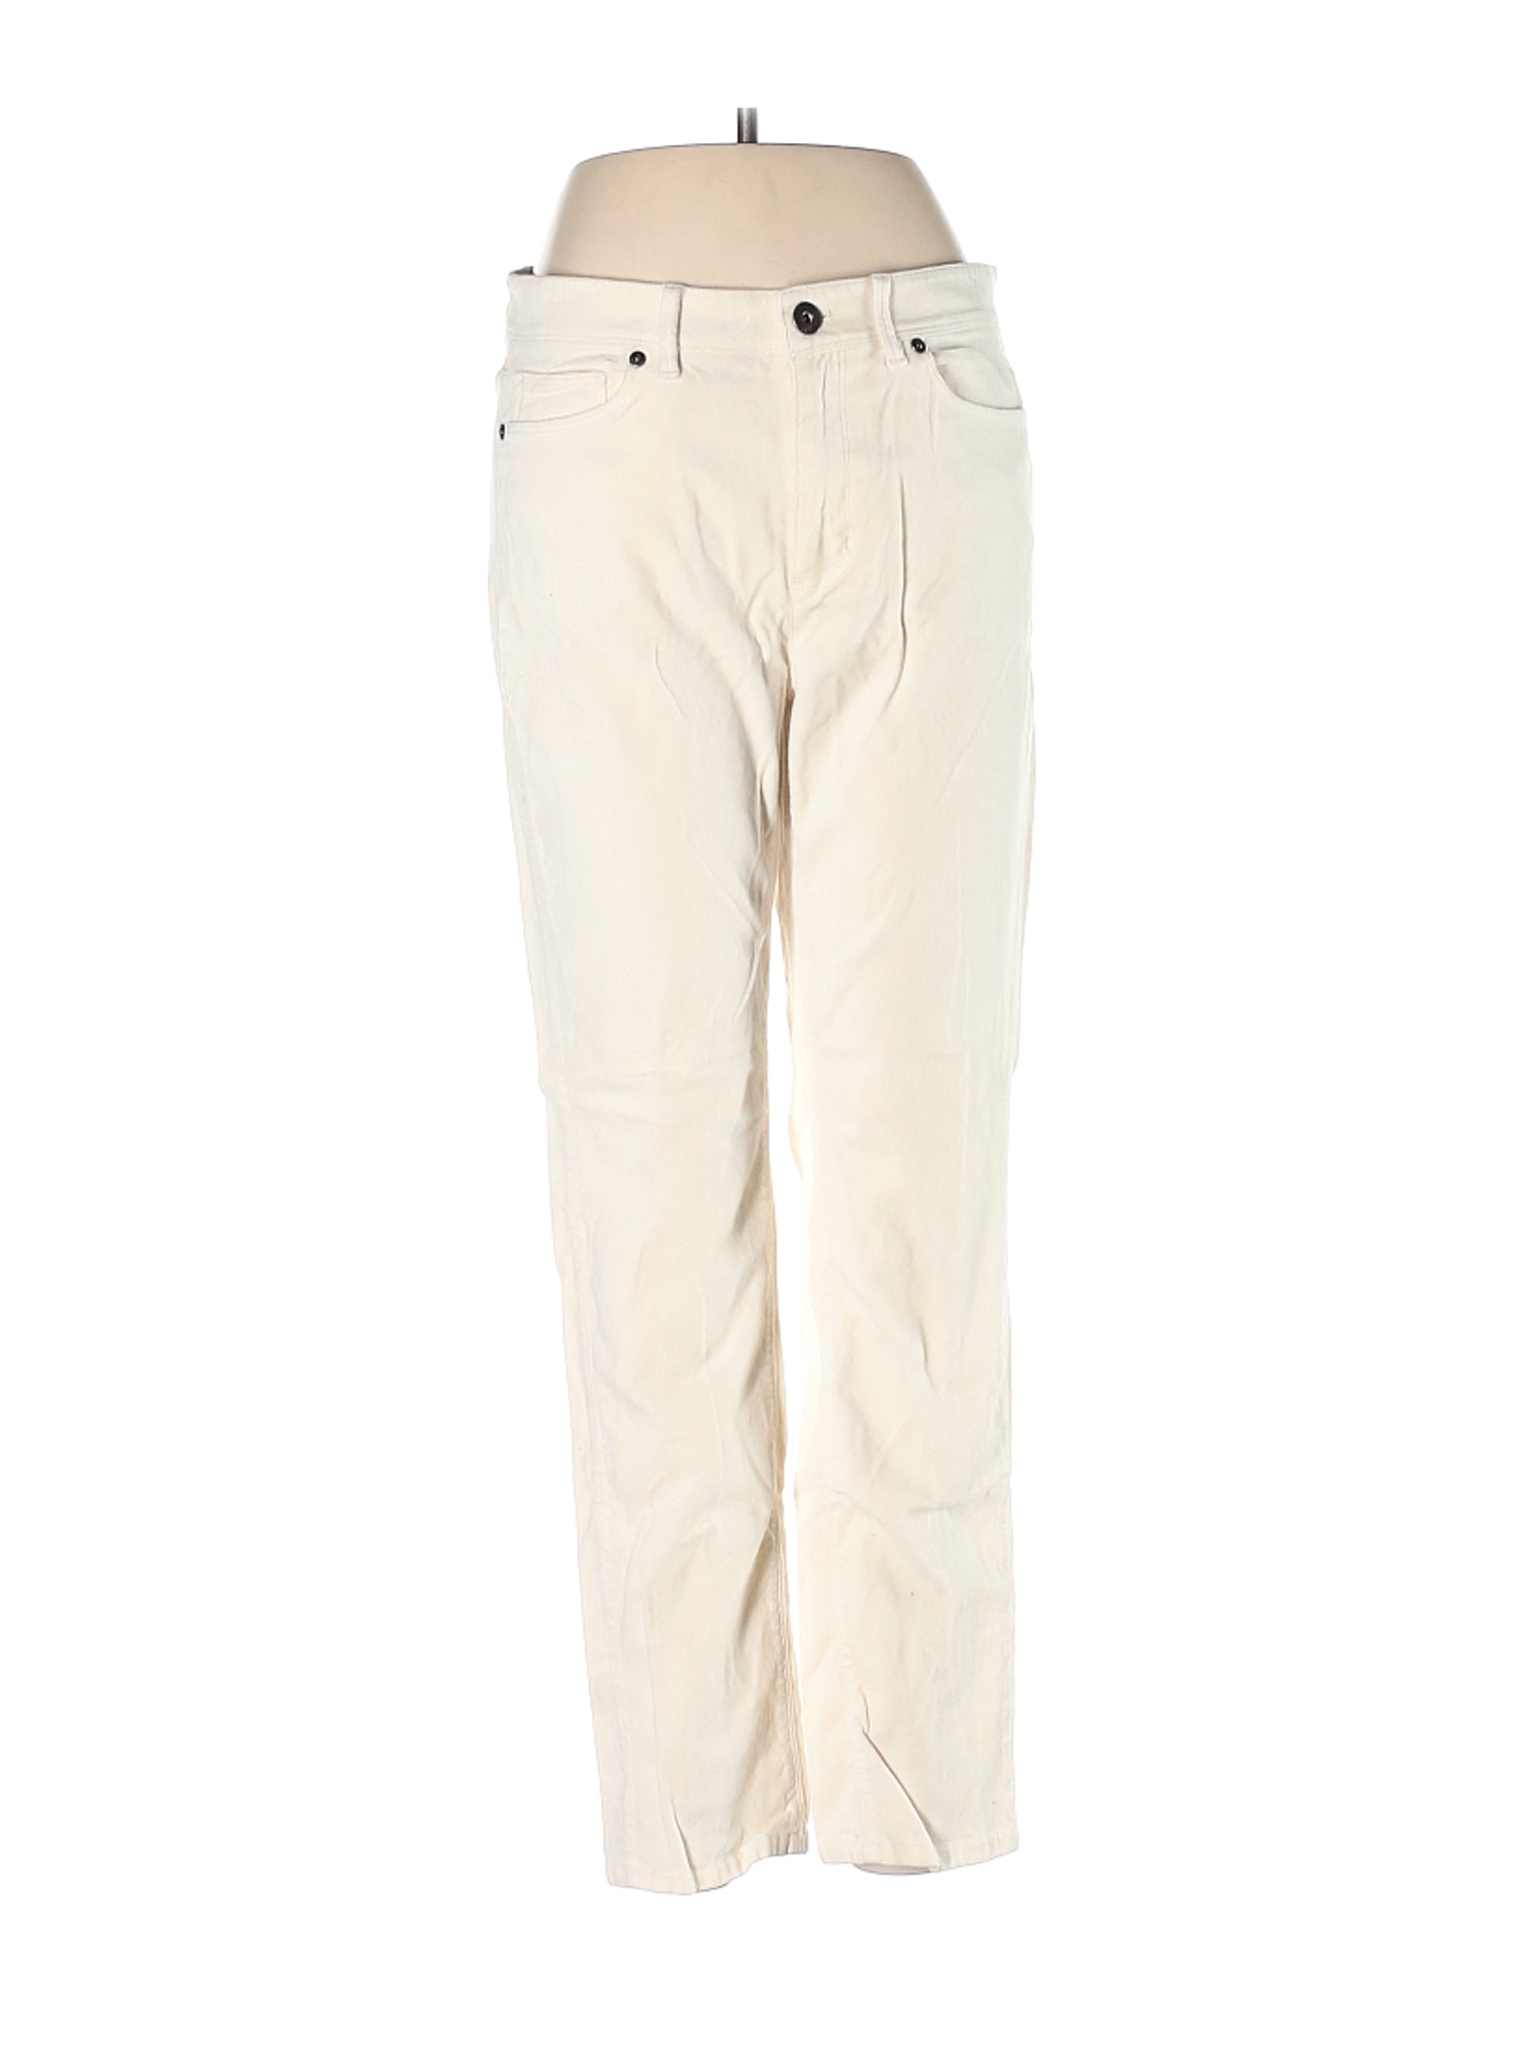 J.Jill Women Ivory Casual Pants 8 | eBay